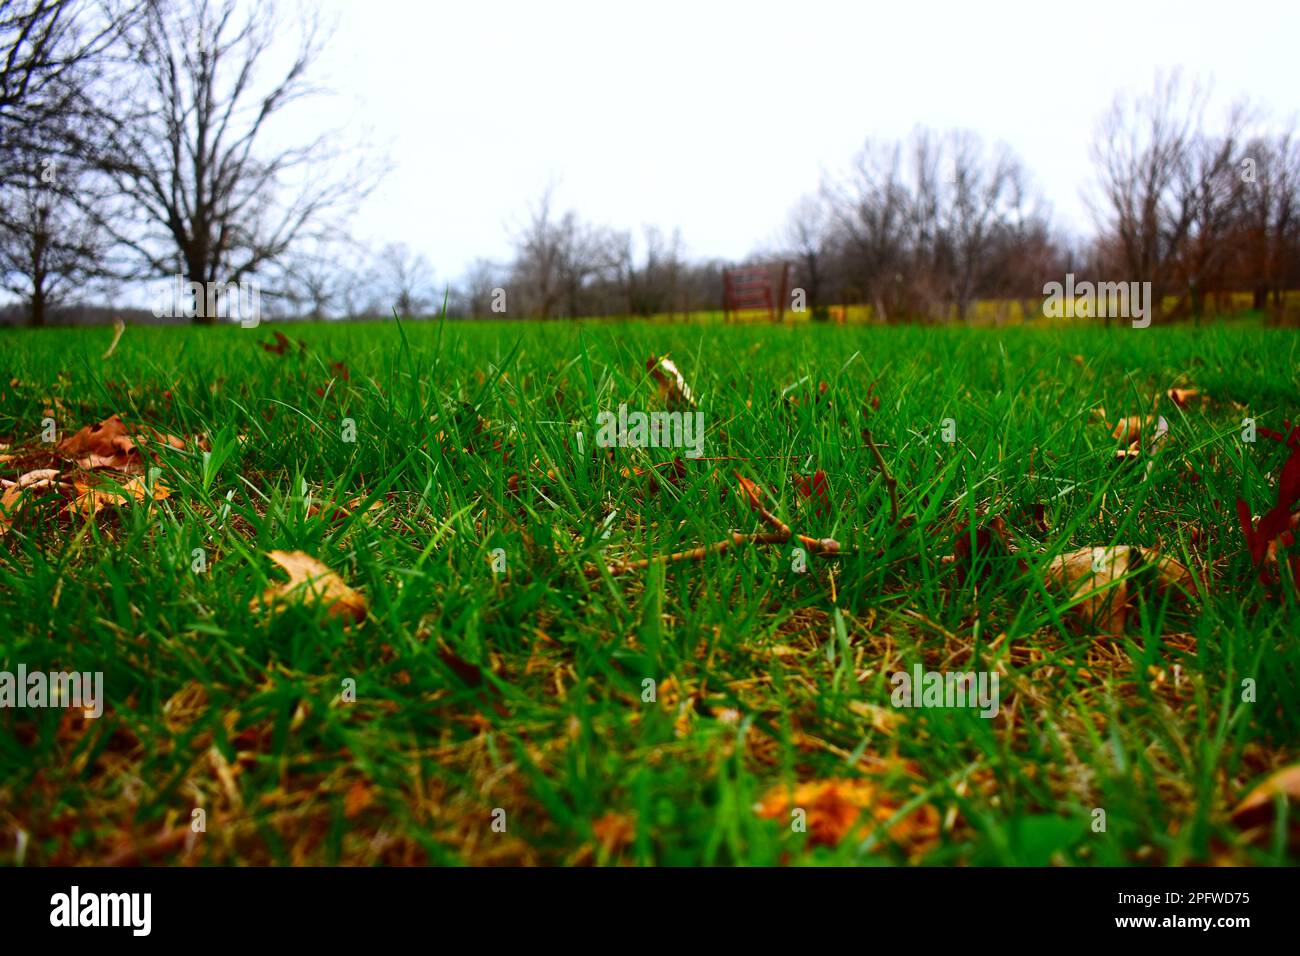 Eine schwache Perspektive auf einen üppigen grünen Rasen im ländlichen Missouri, MO, USA, USA. Frühling. Lebendige Farben. Stockfoto